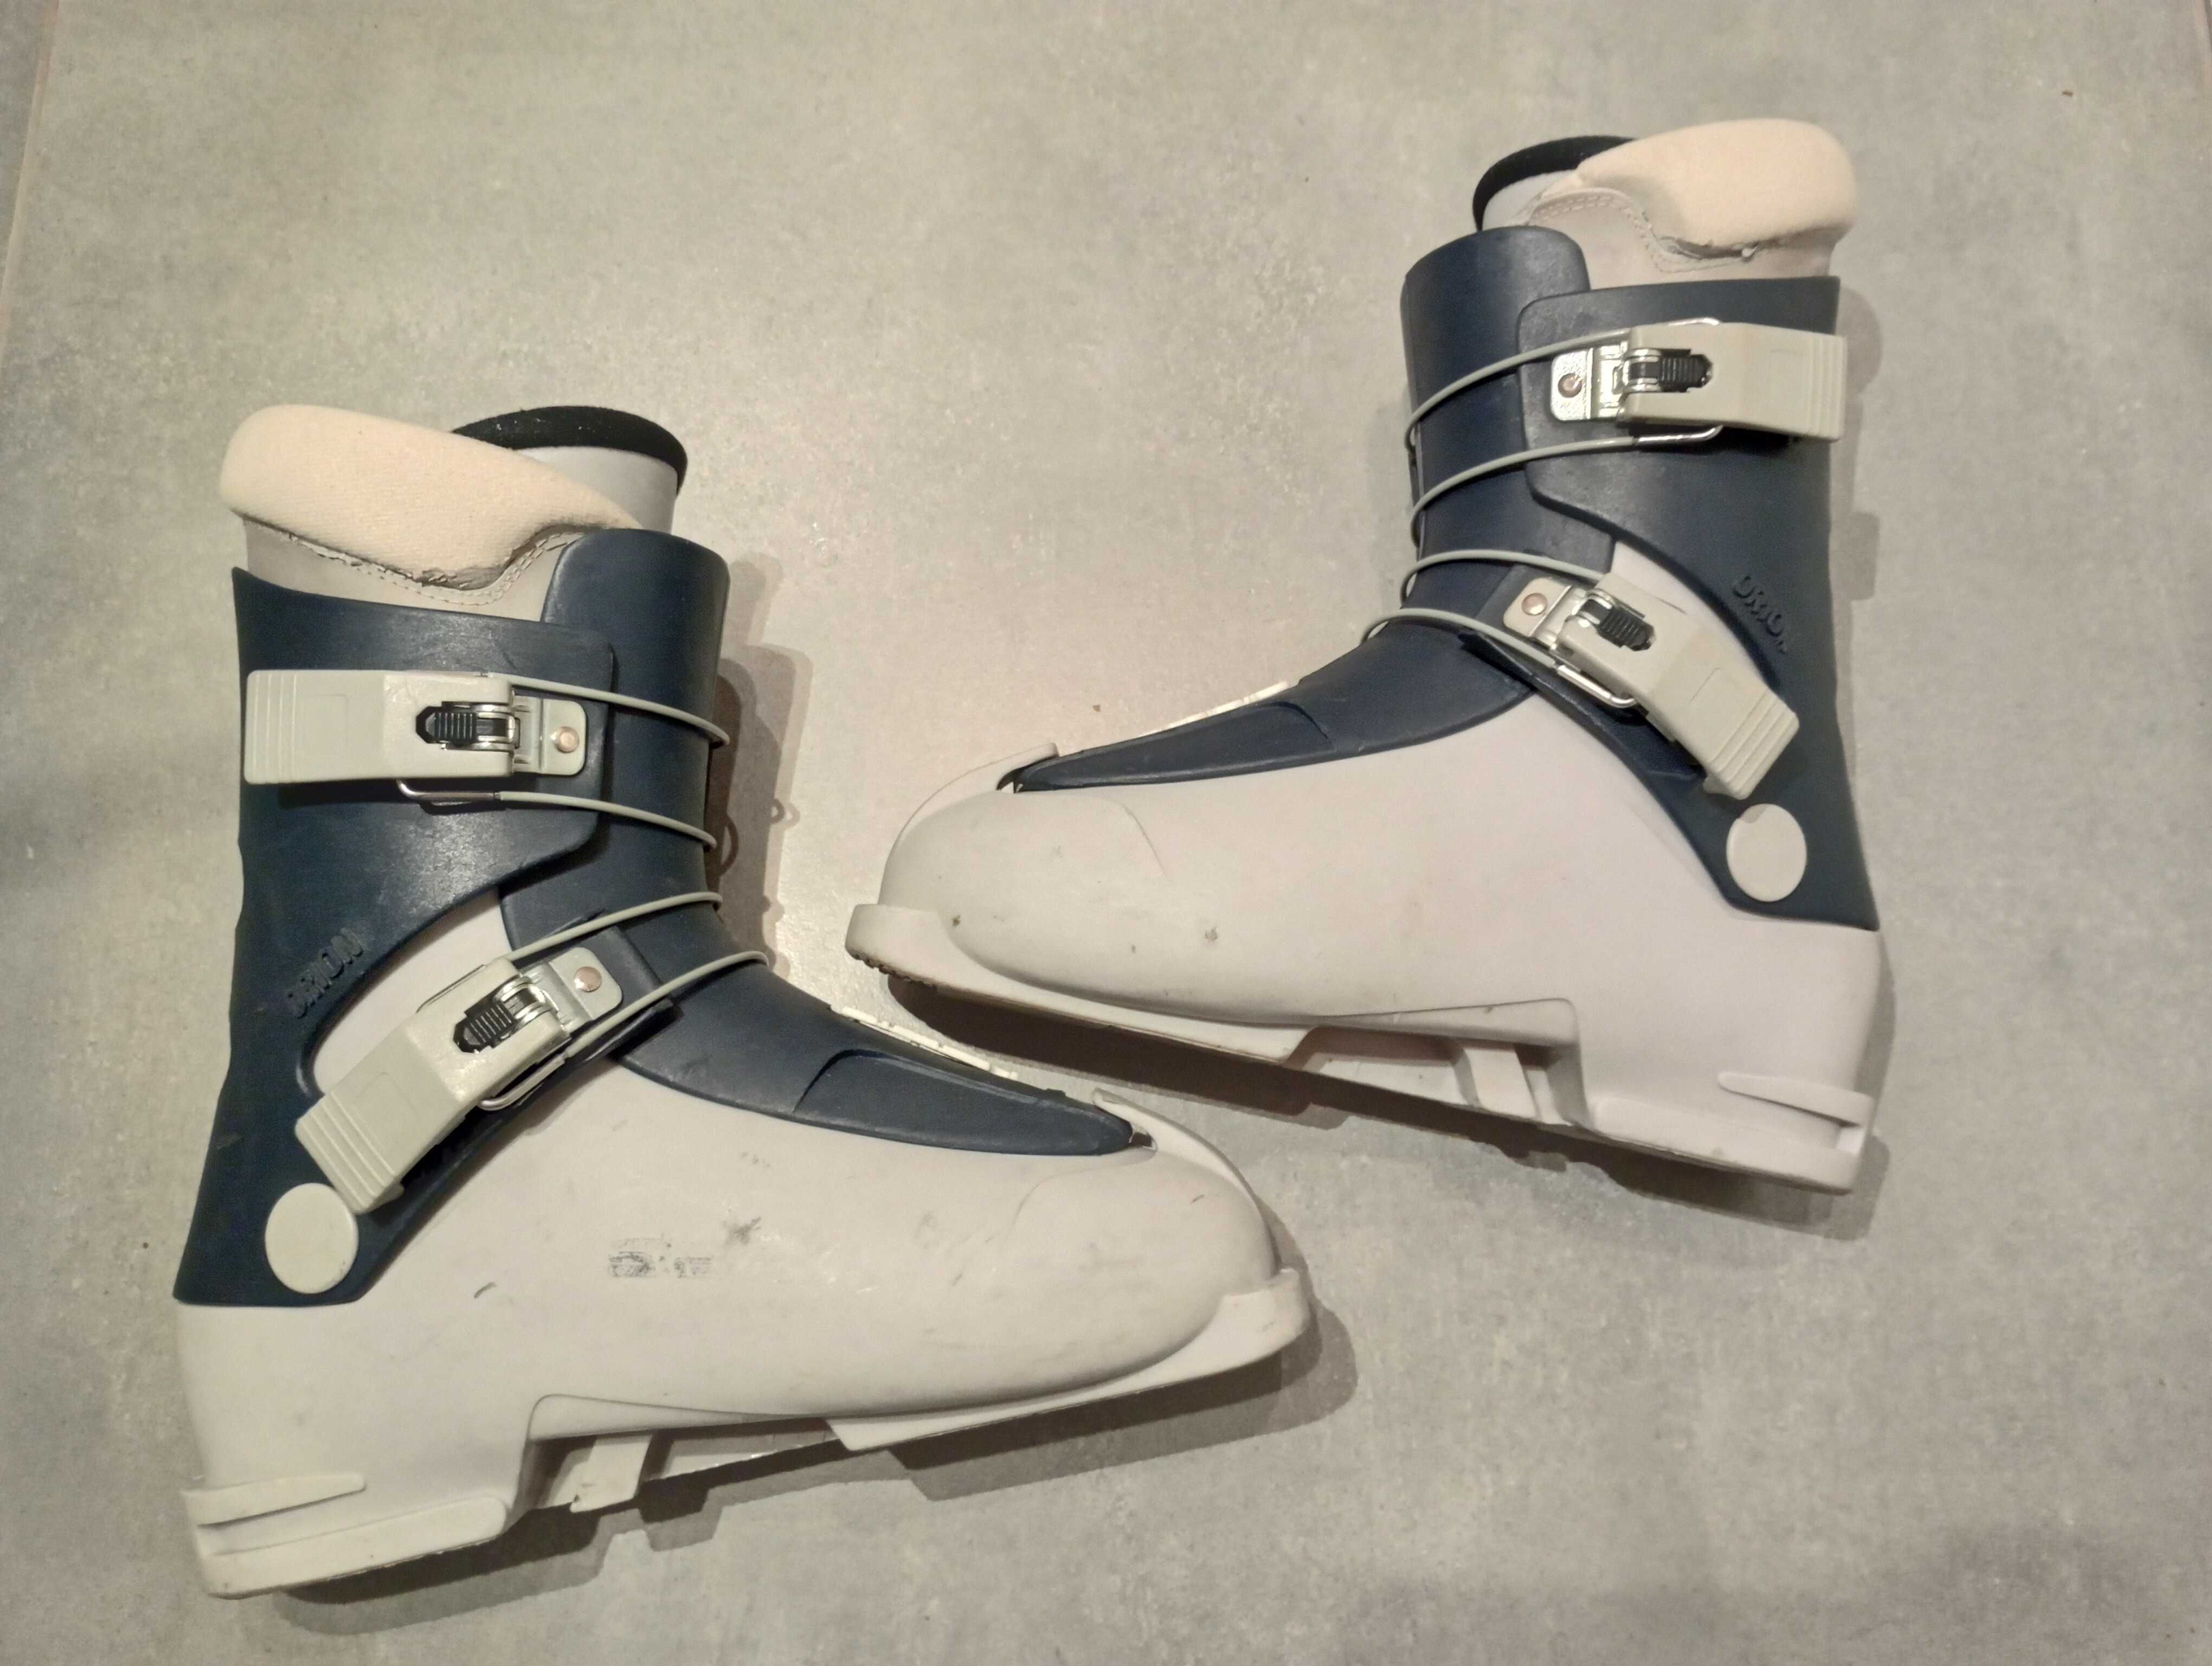 Buty narciarskie austriackie STEFAN wkładka 26,5cm(Rozm.41)Skorupa31cm